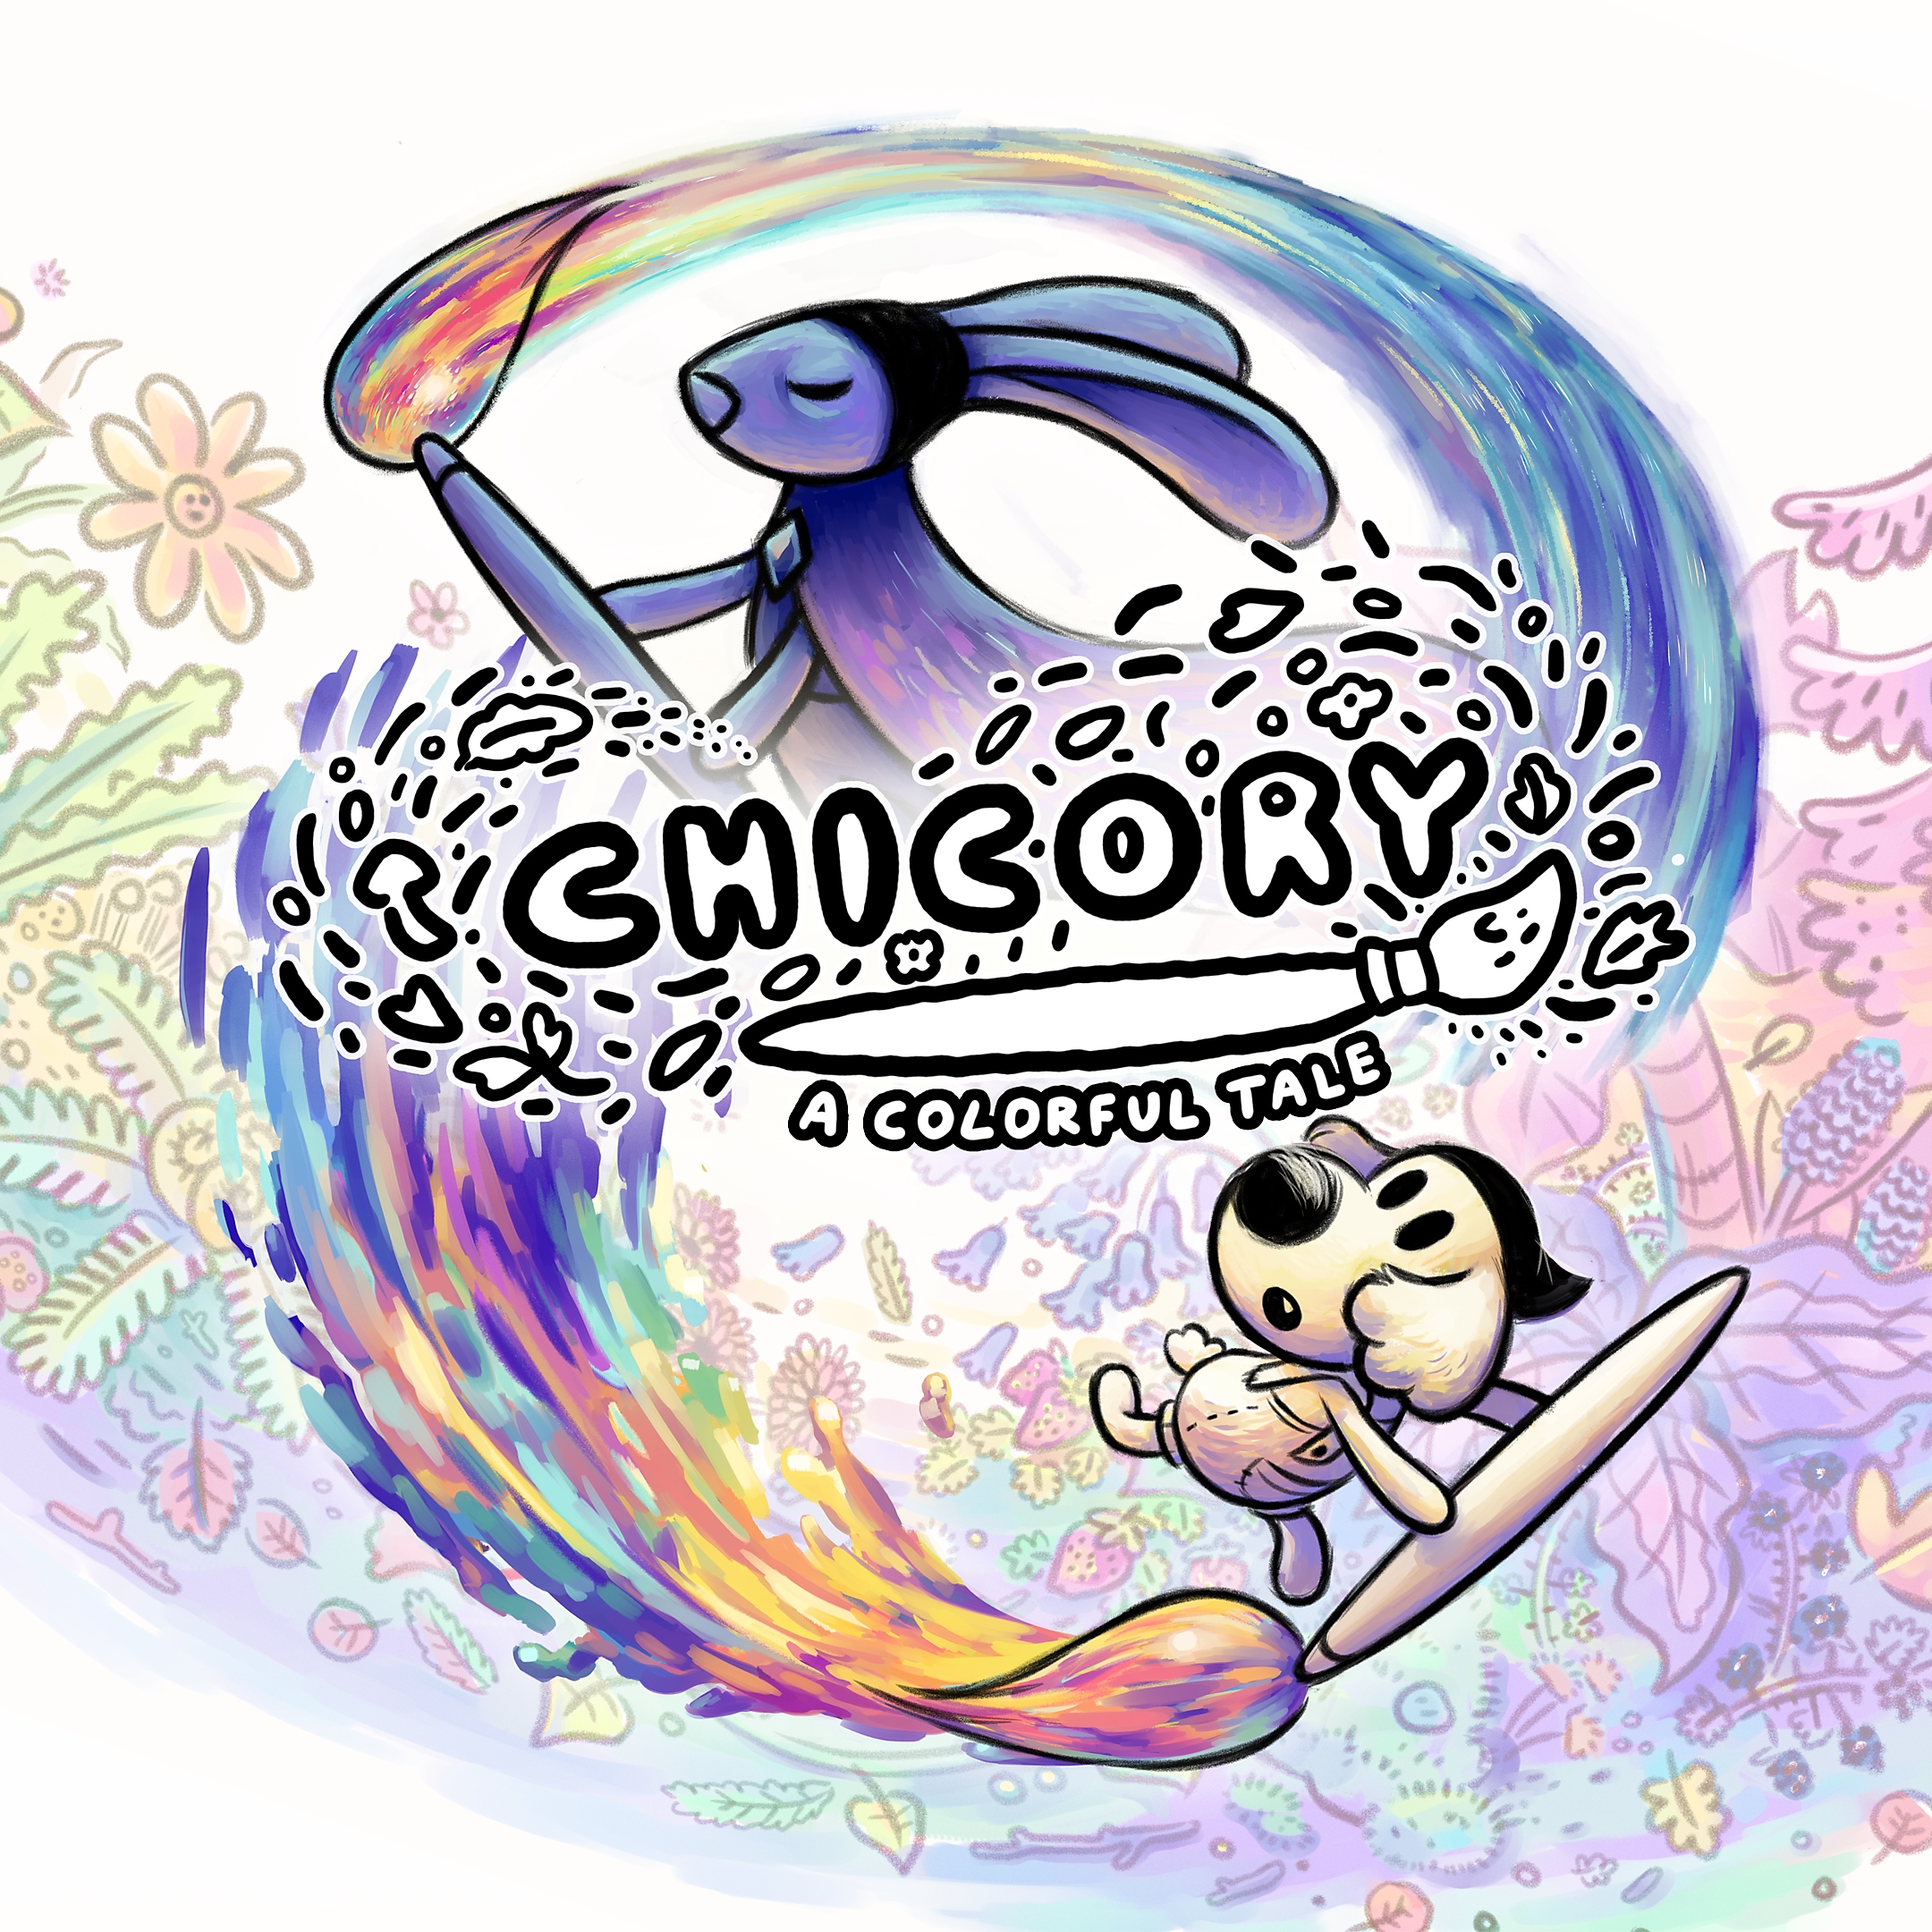 الصورة الفنية الأساسية للعبة Chicory: A Colorful Tale